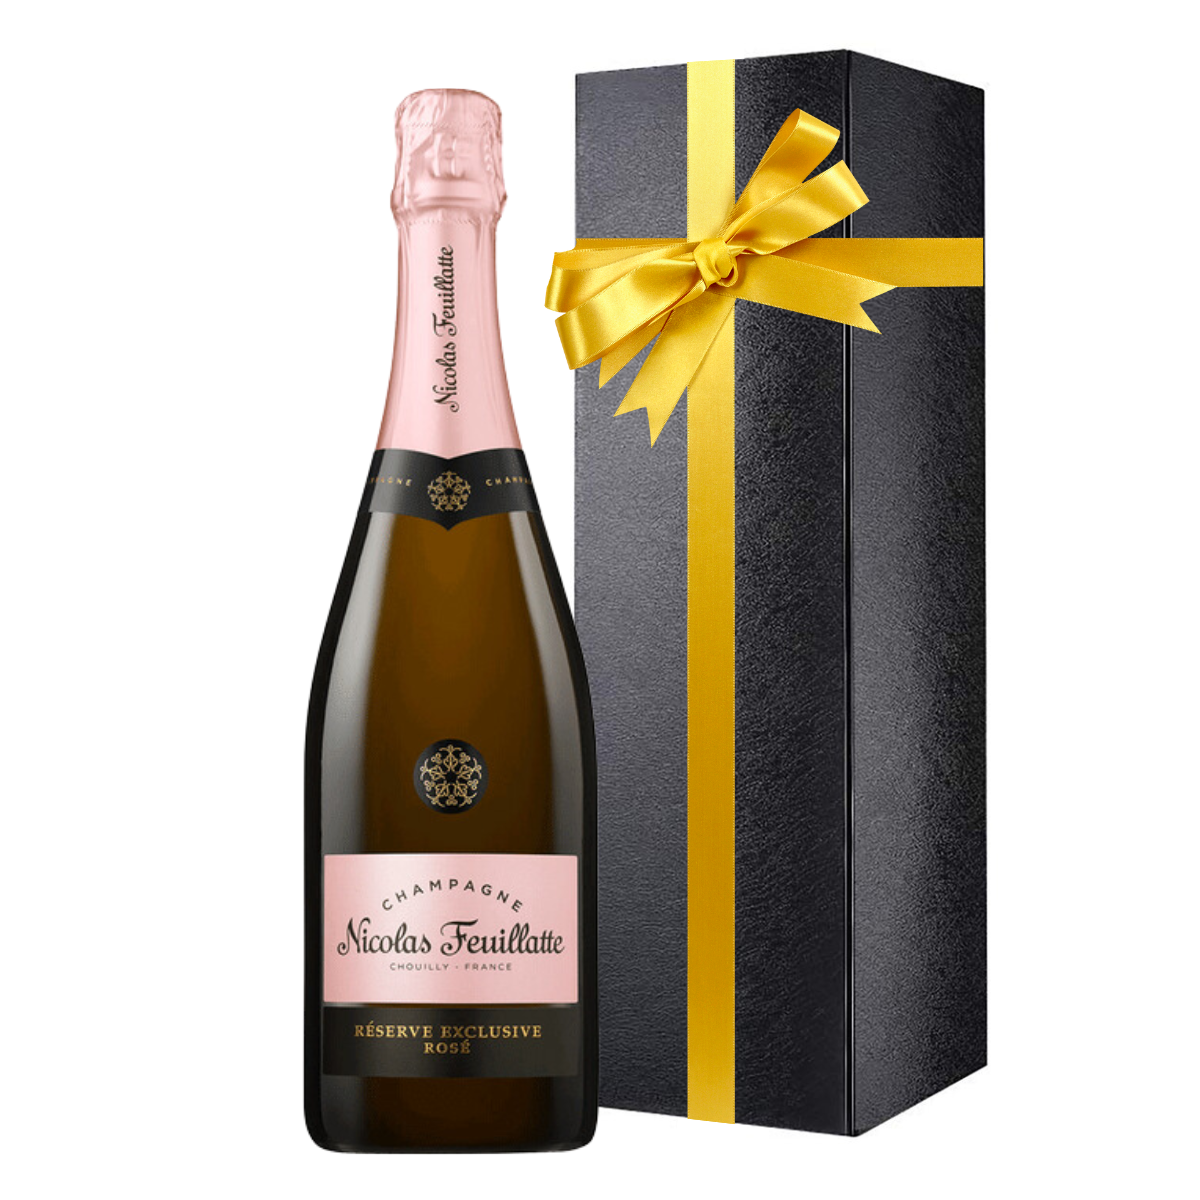 Nicolas feuillatte champagne rosé réserve exclusive 